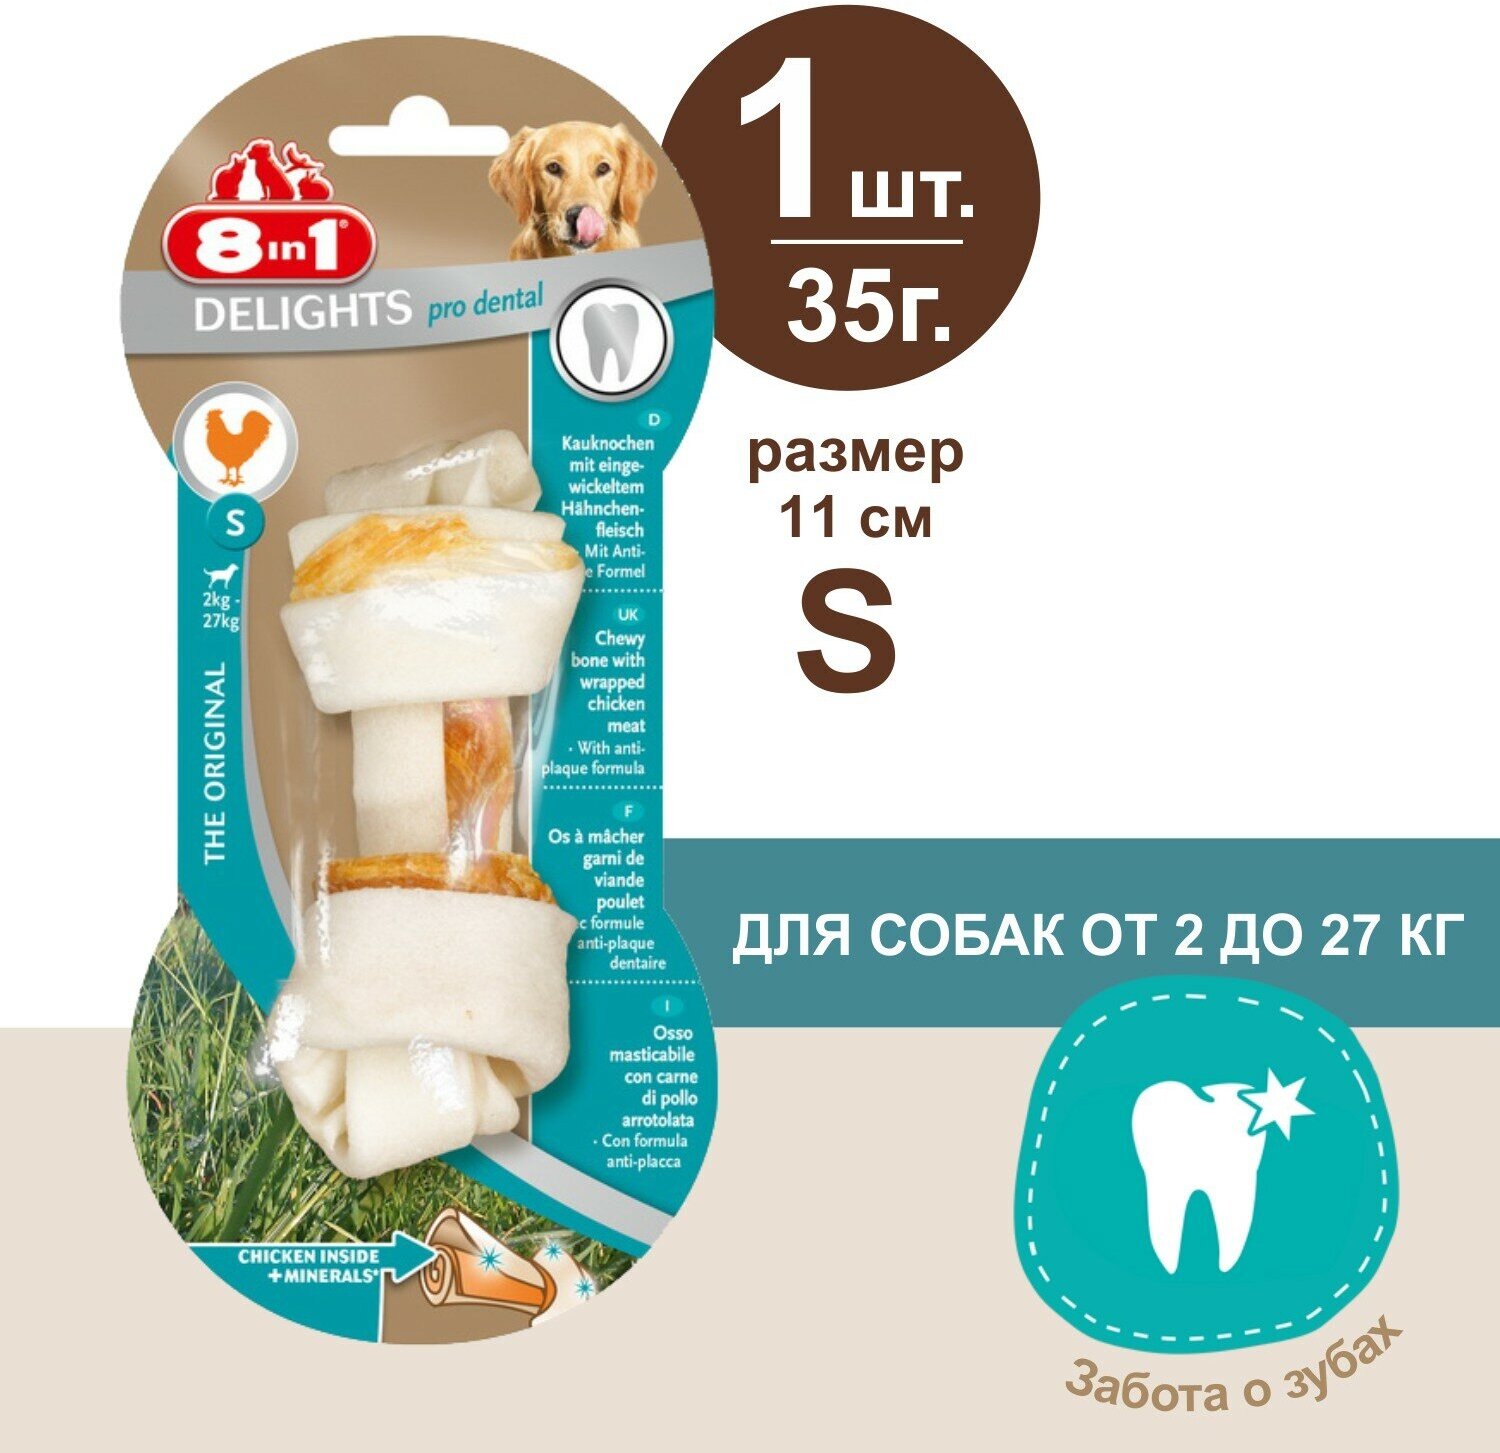 Косточка 8in1 Delights Pro Dental для очистки зубов собак, с куриным мясом в жесткой говяжьей коже, S (12 см), 1 шт. 35г